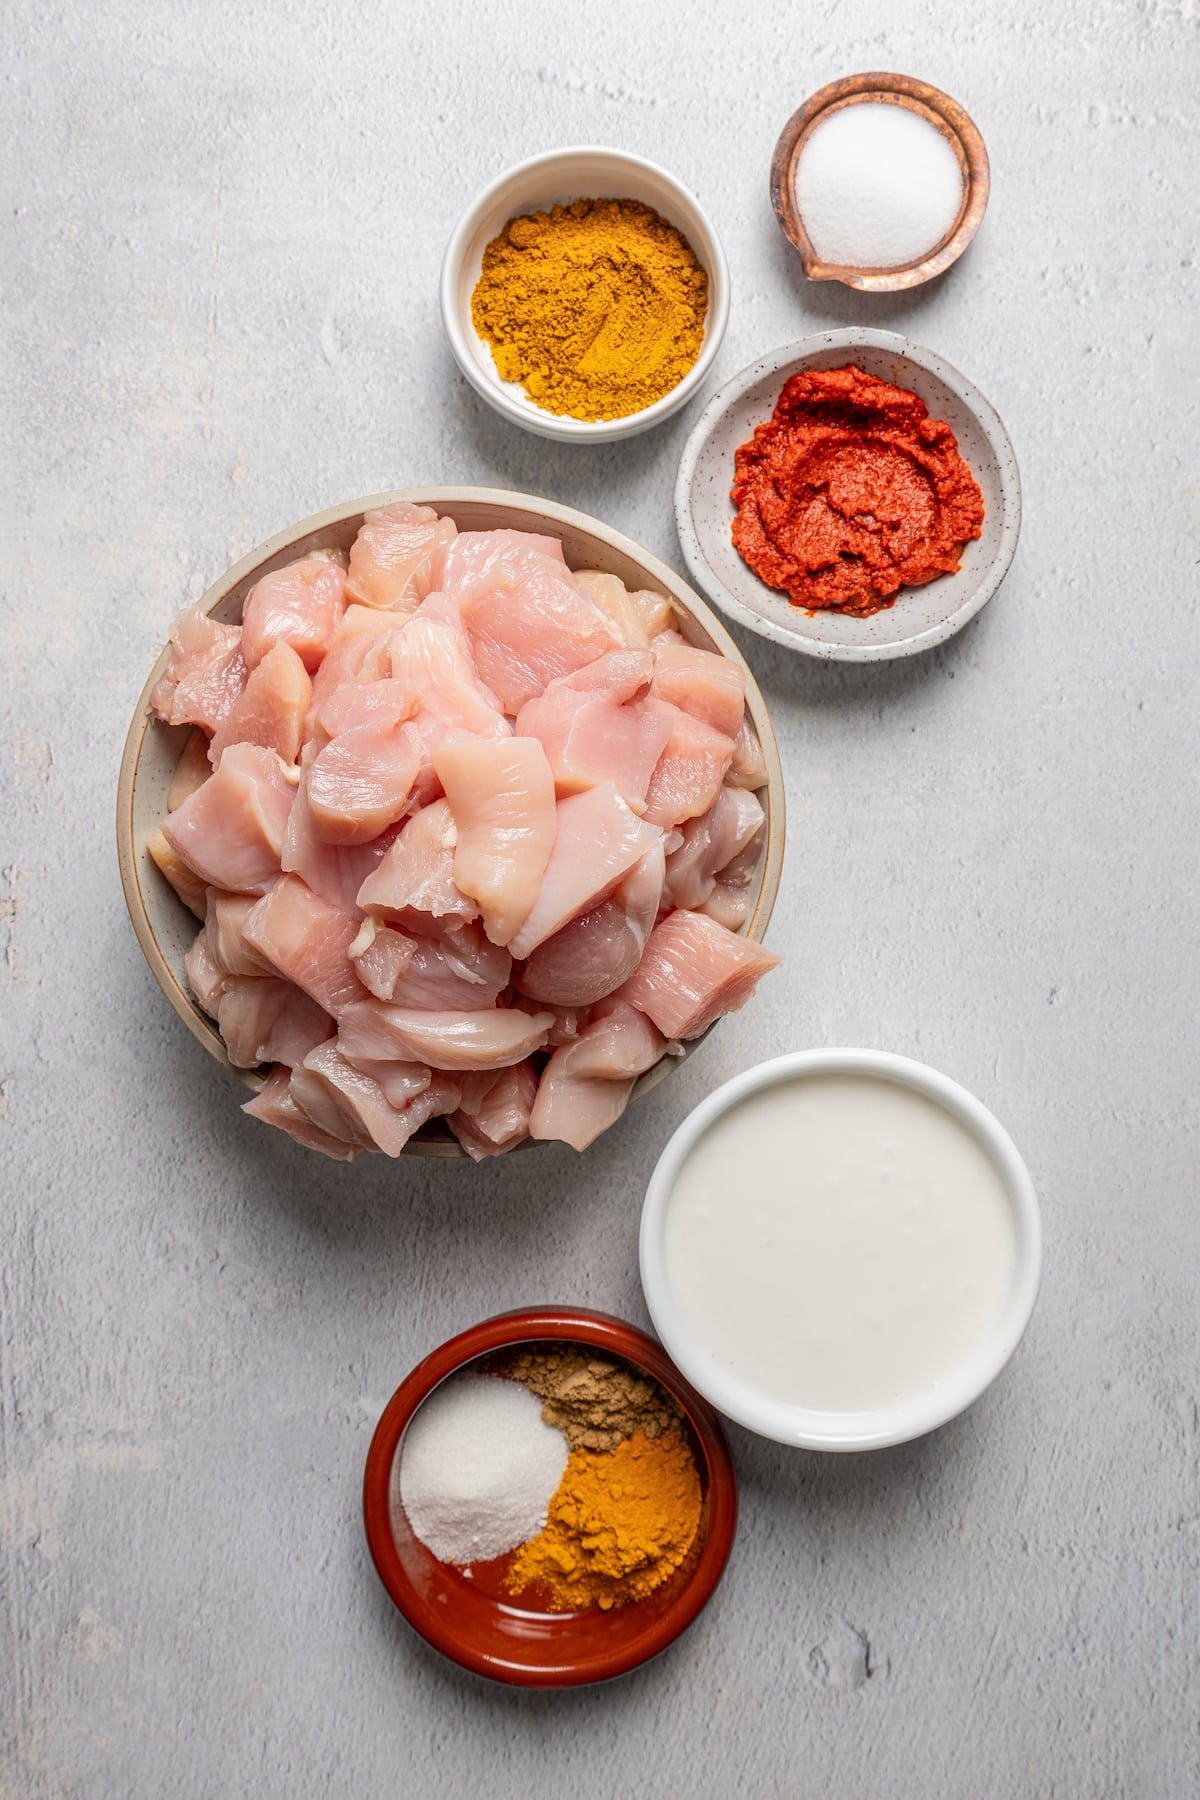 Ingredients for chicken satay skewers.